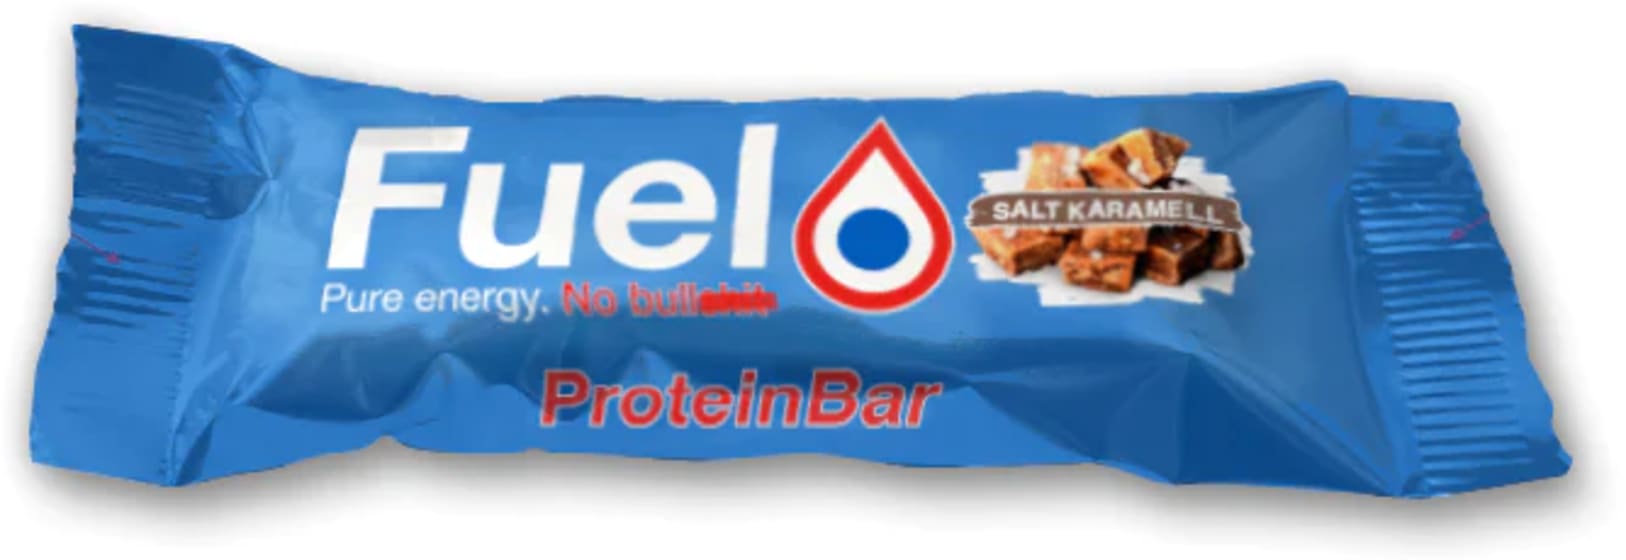 ProteinBar Salt Karamell